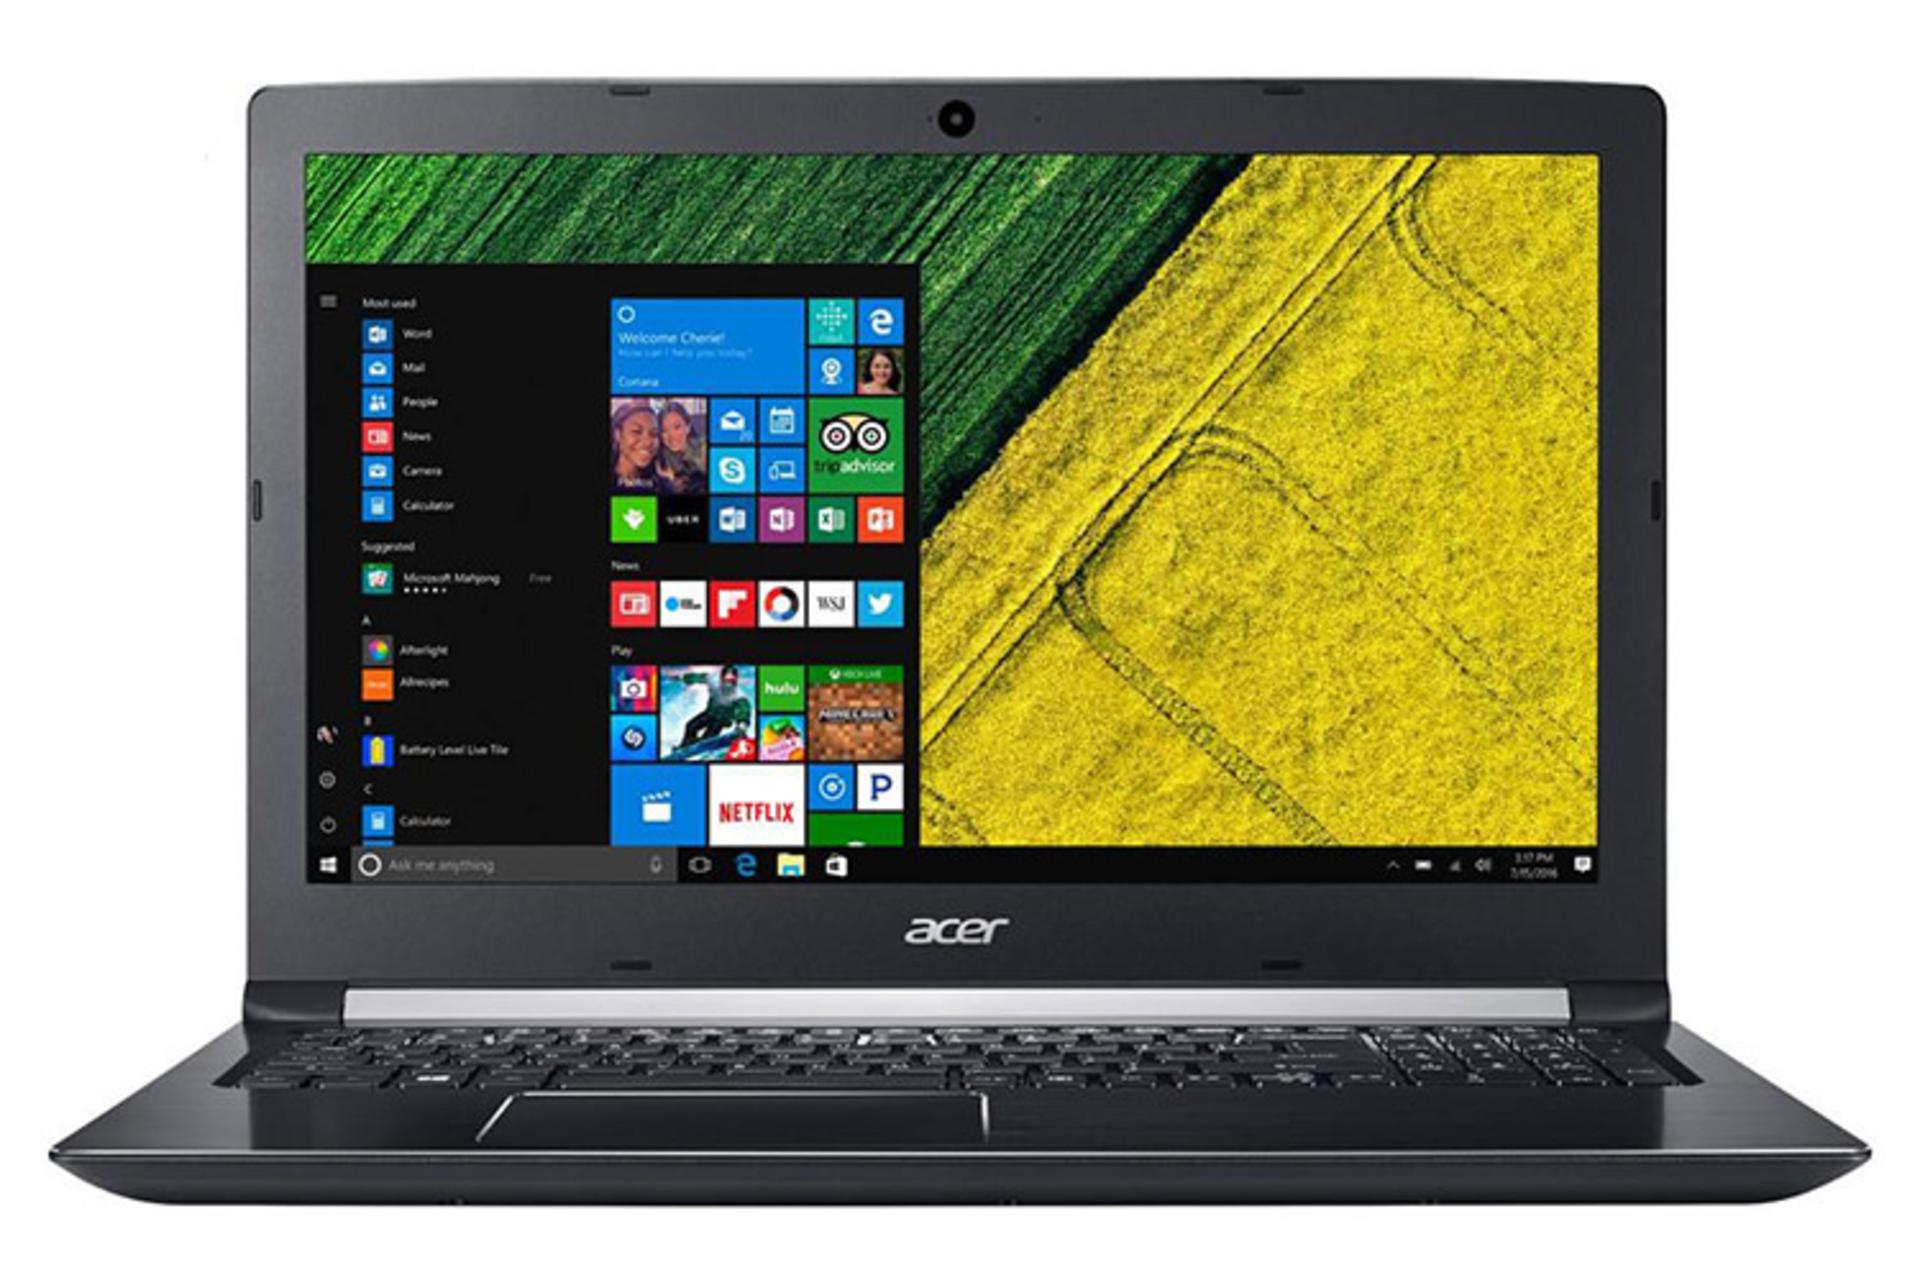  Acer Aspire A515-51G-833Y